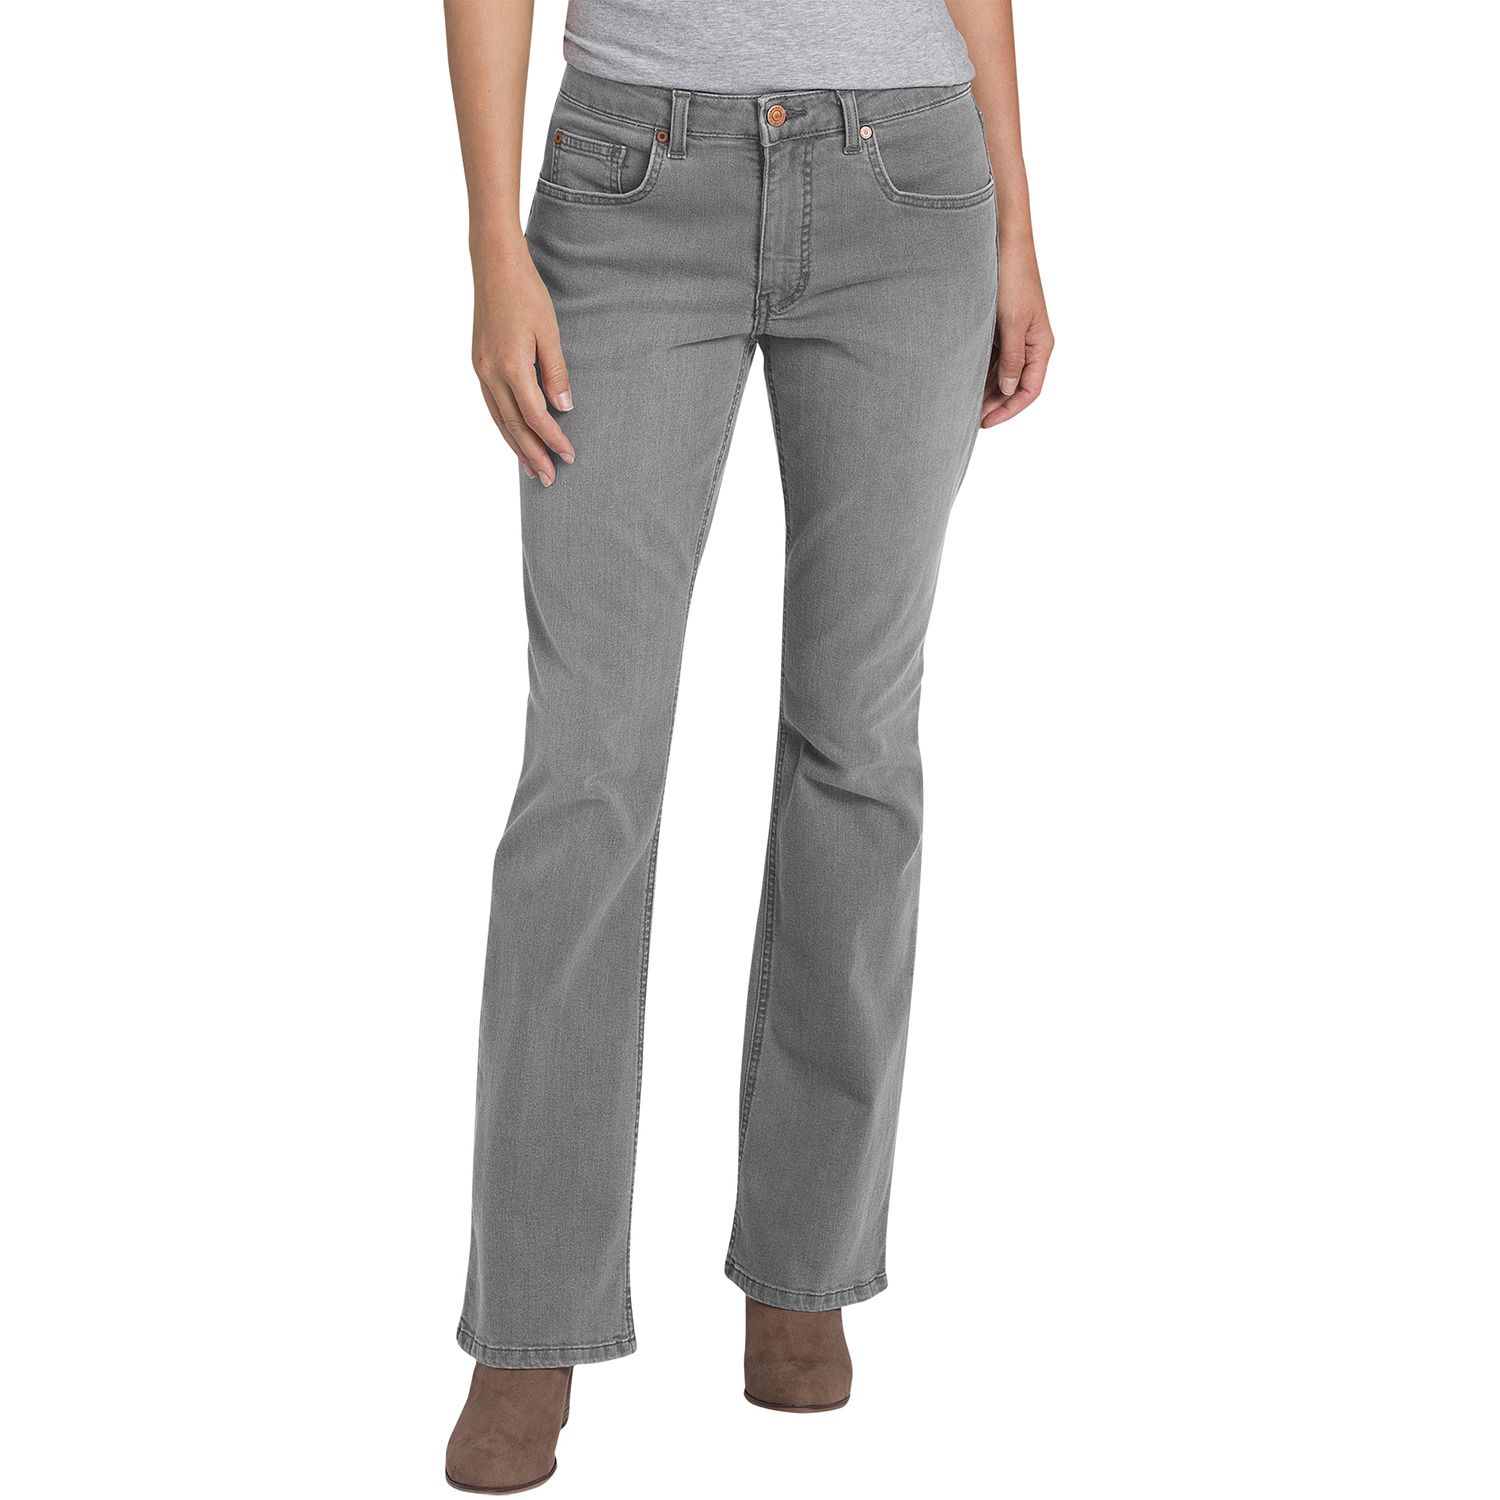 arizona super skinny jeans